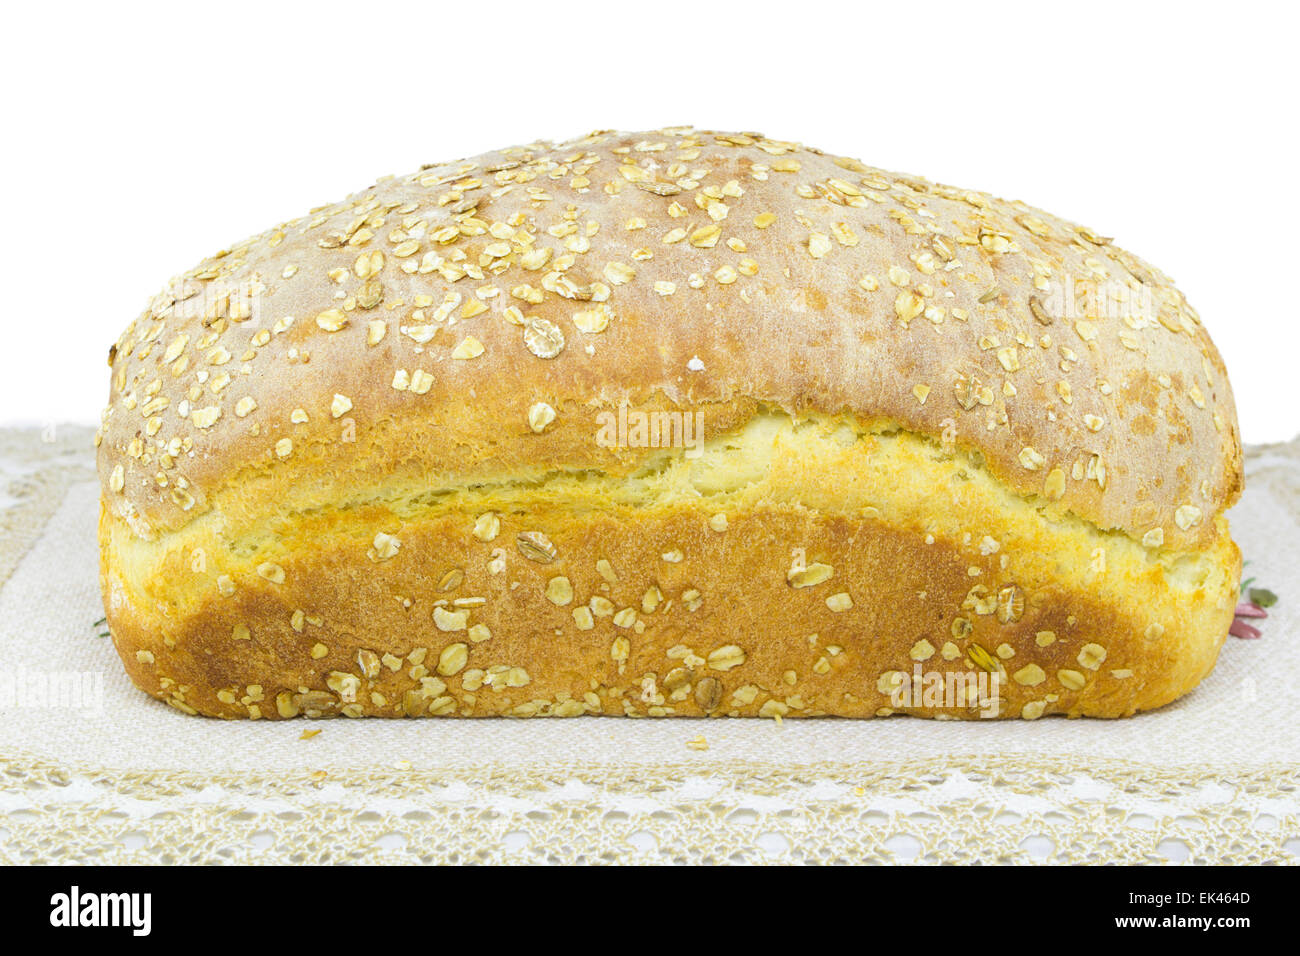 Fresco e golden il pane fatto in casa isolata su sfondo bianco Foto Stock